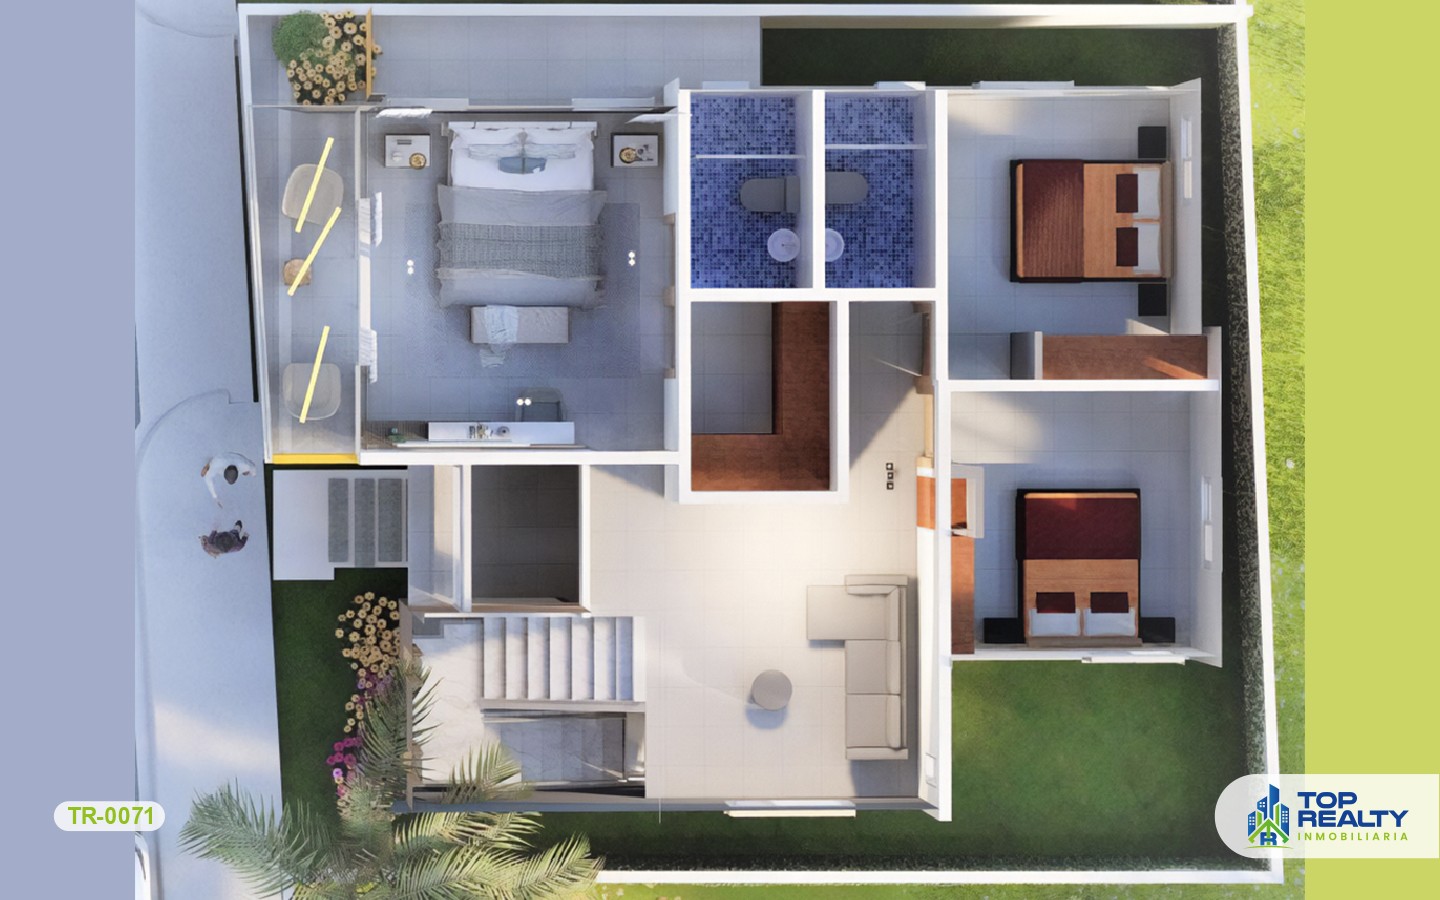 casas - TR-0071: Casa unifamiliar espectacular con diseño y distribución buscados.